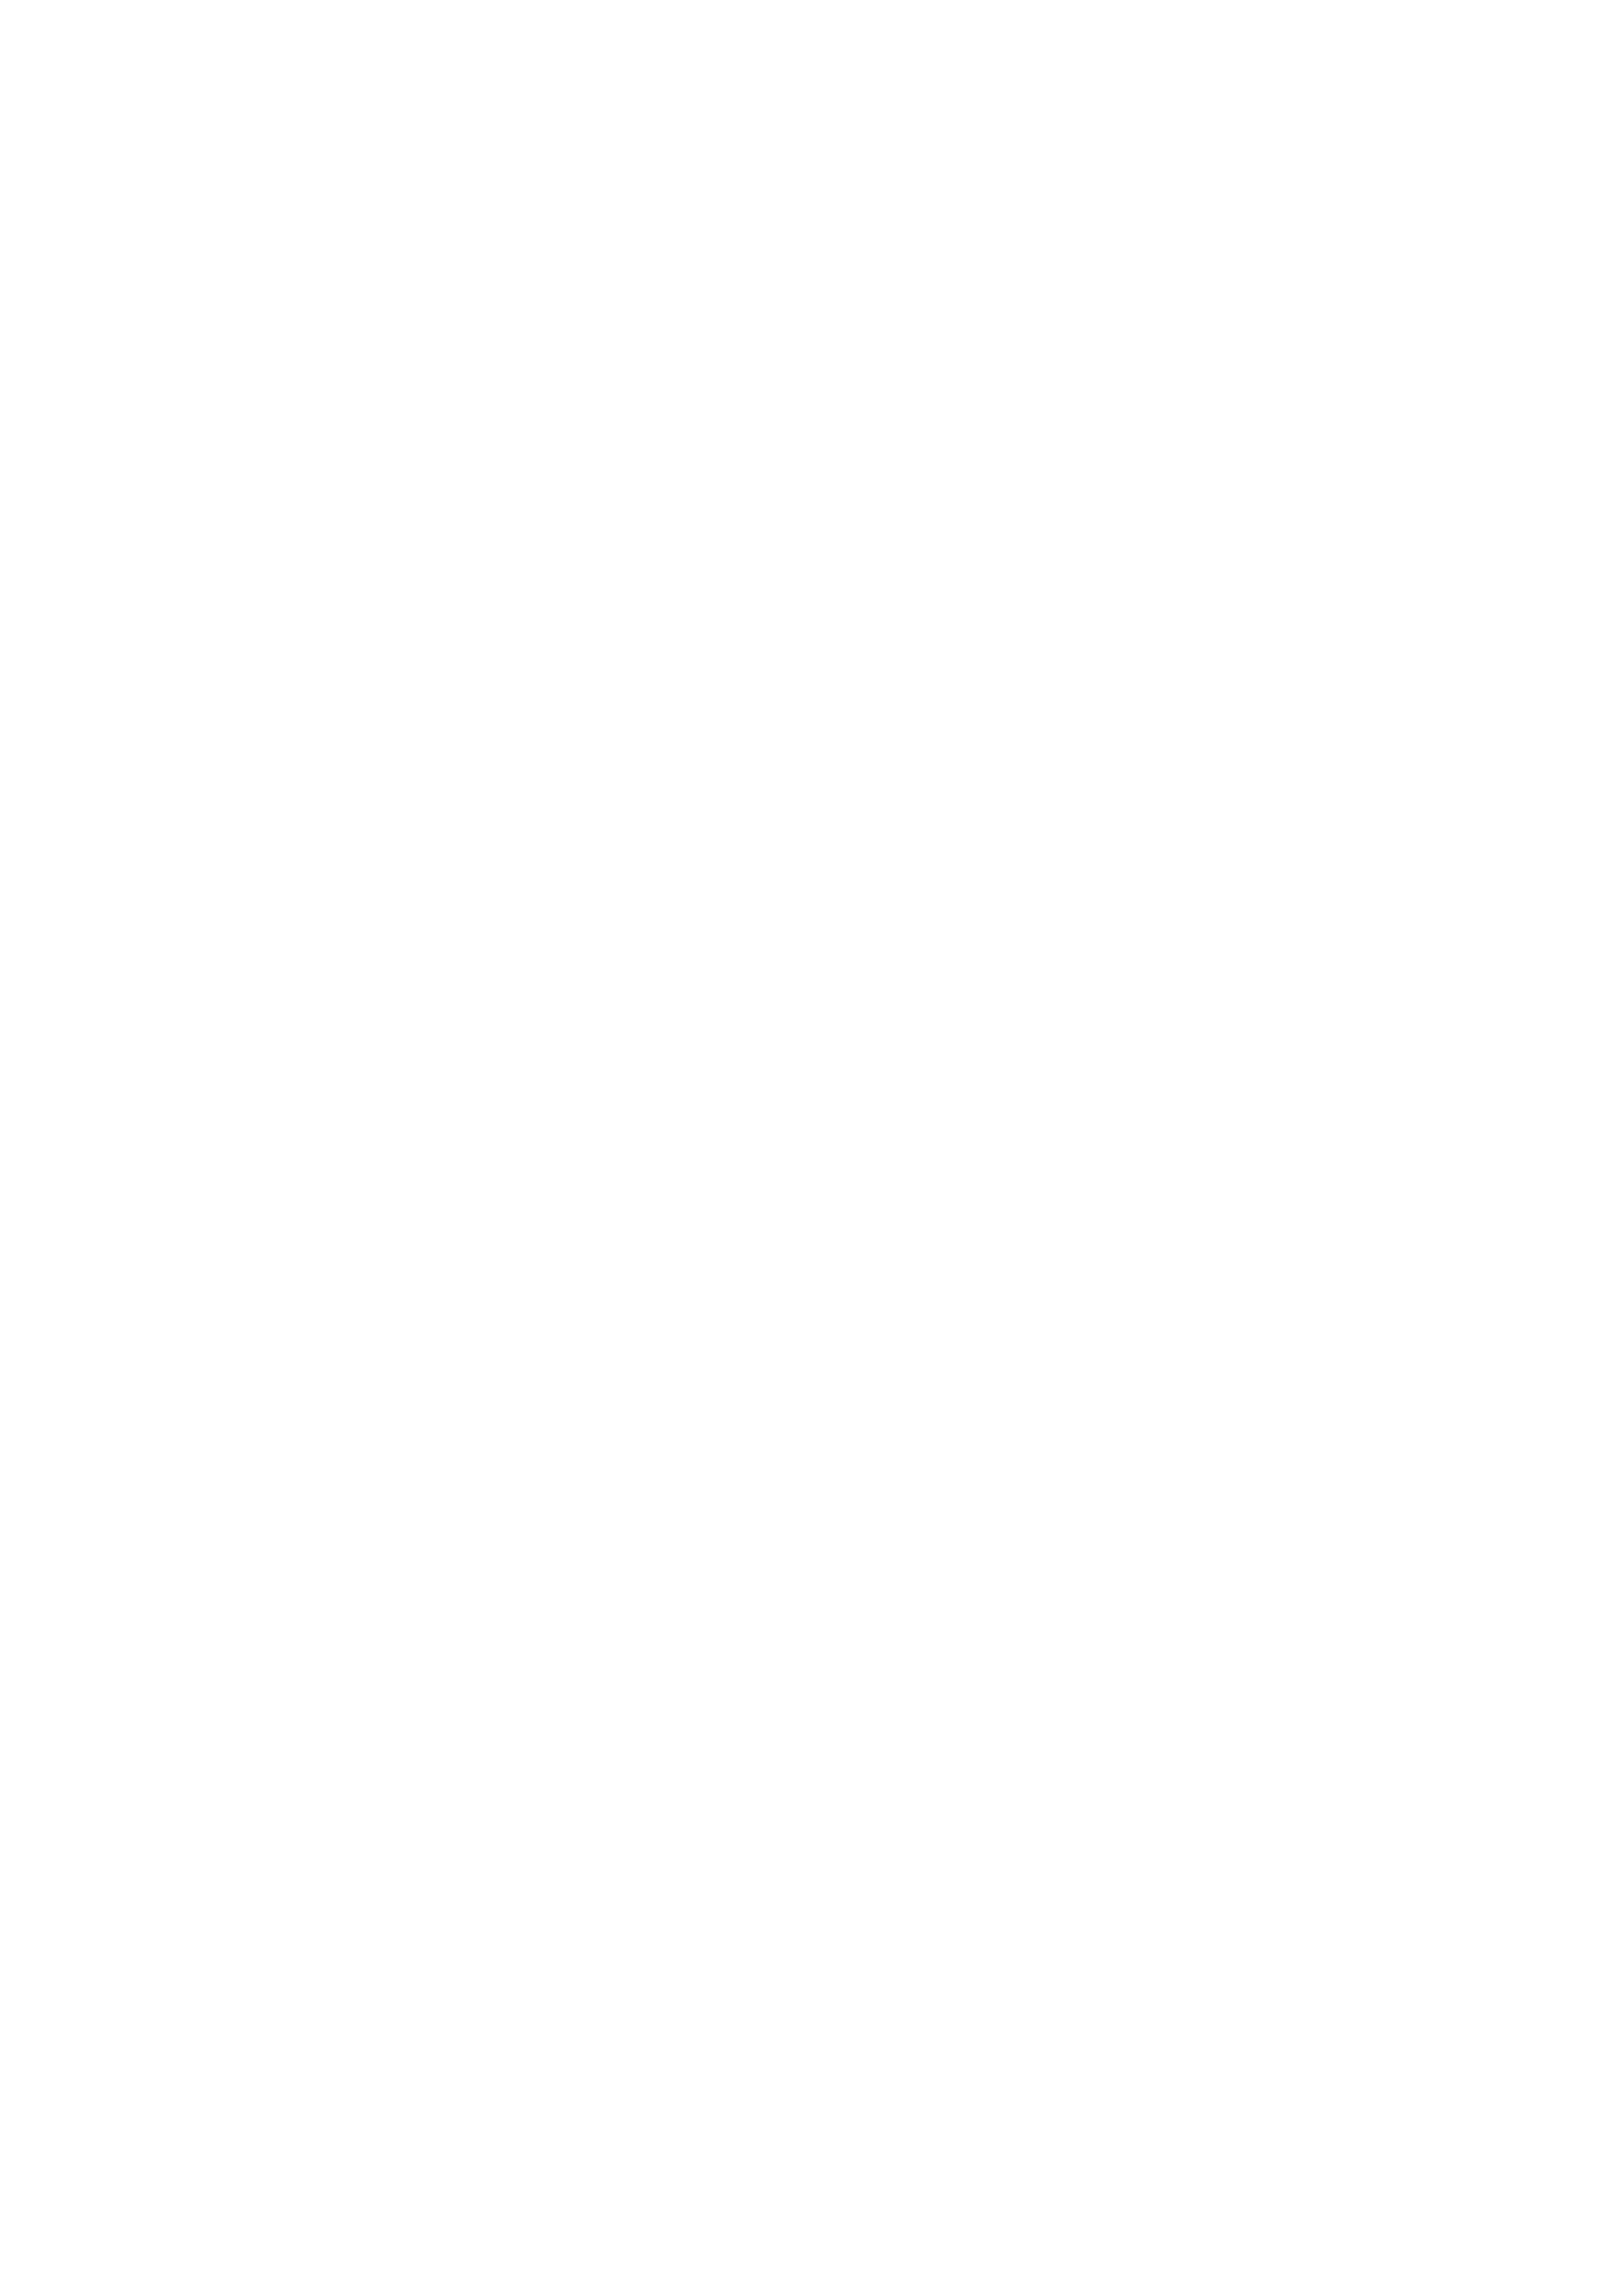 Mabroek versmarkt & slagerij in Oegstgeest